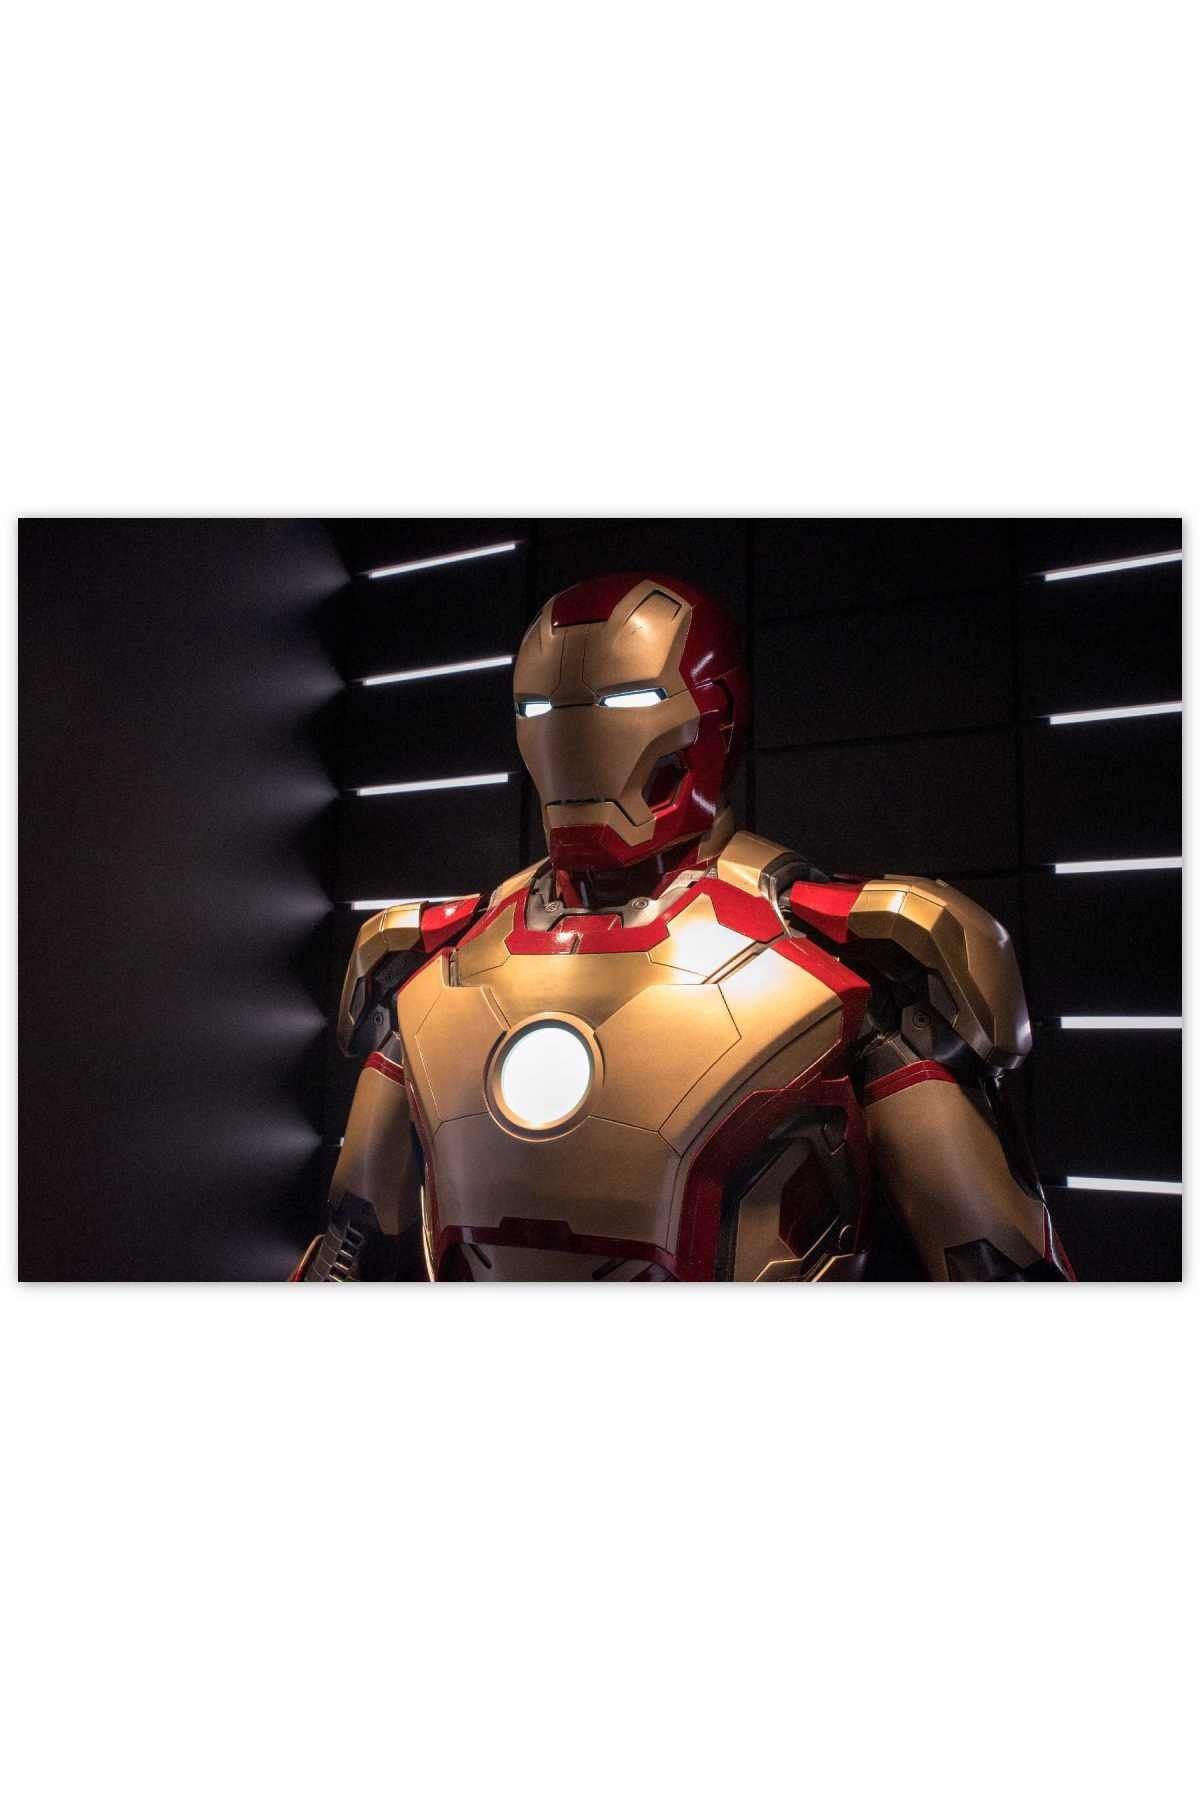 Cakatablo Ahşap Tablo Iron Man Armor 35 50 cm